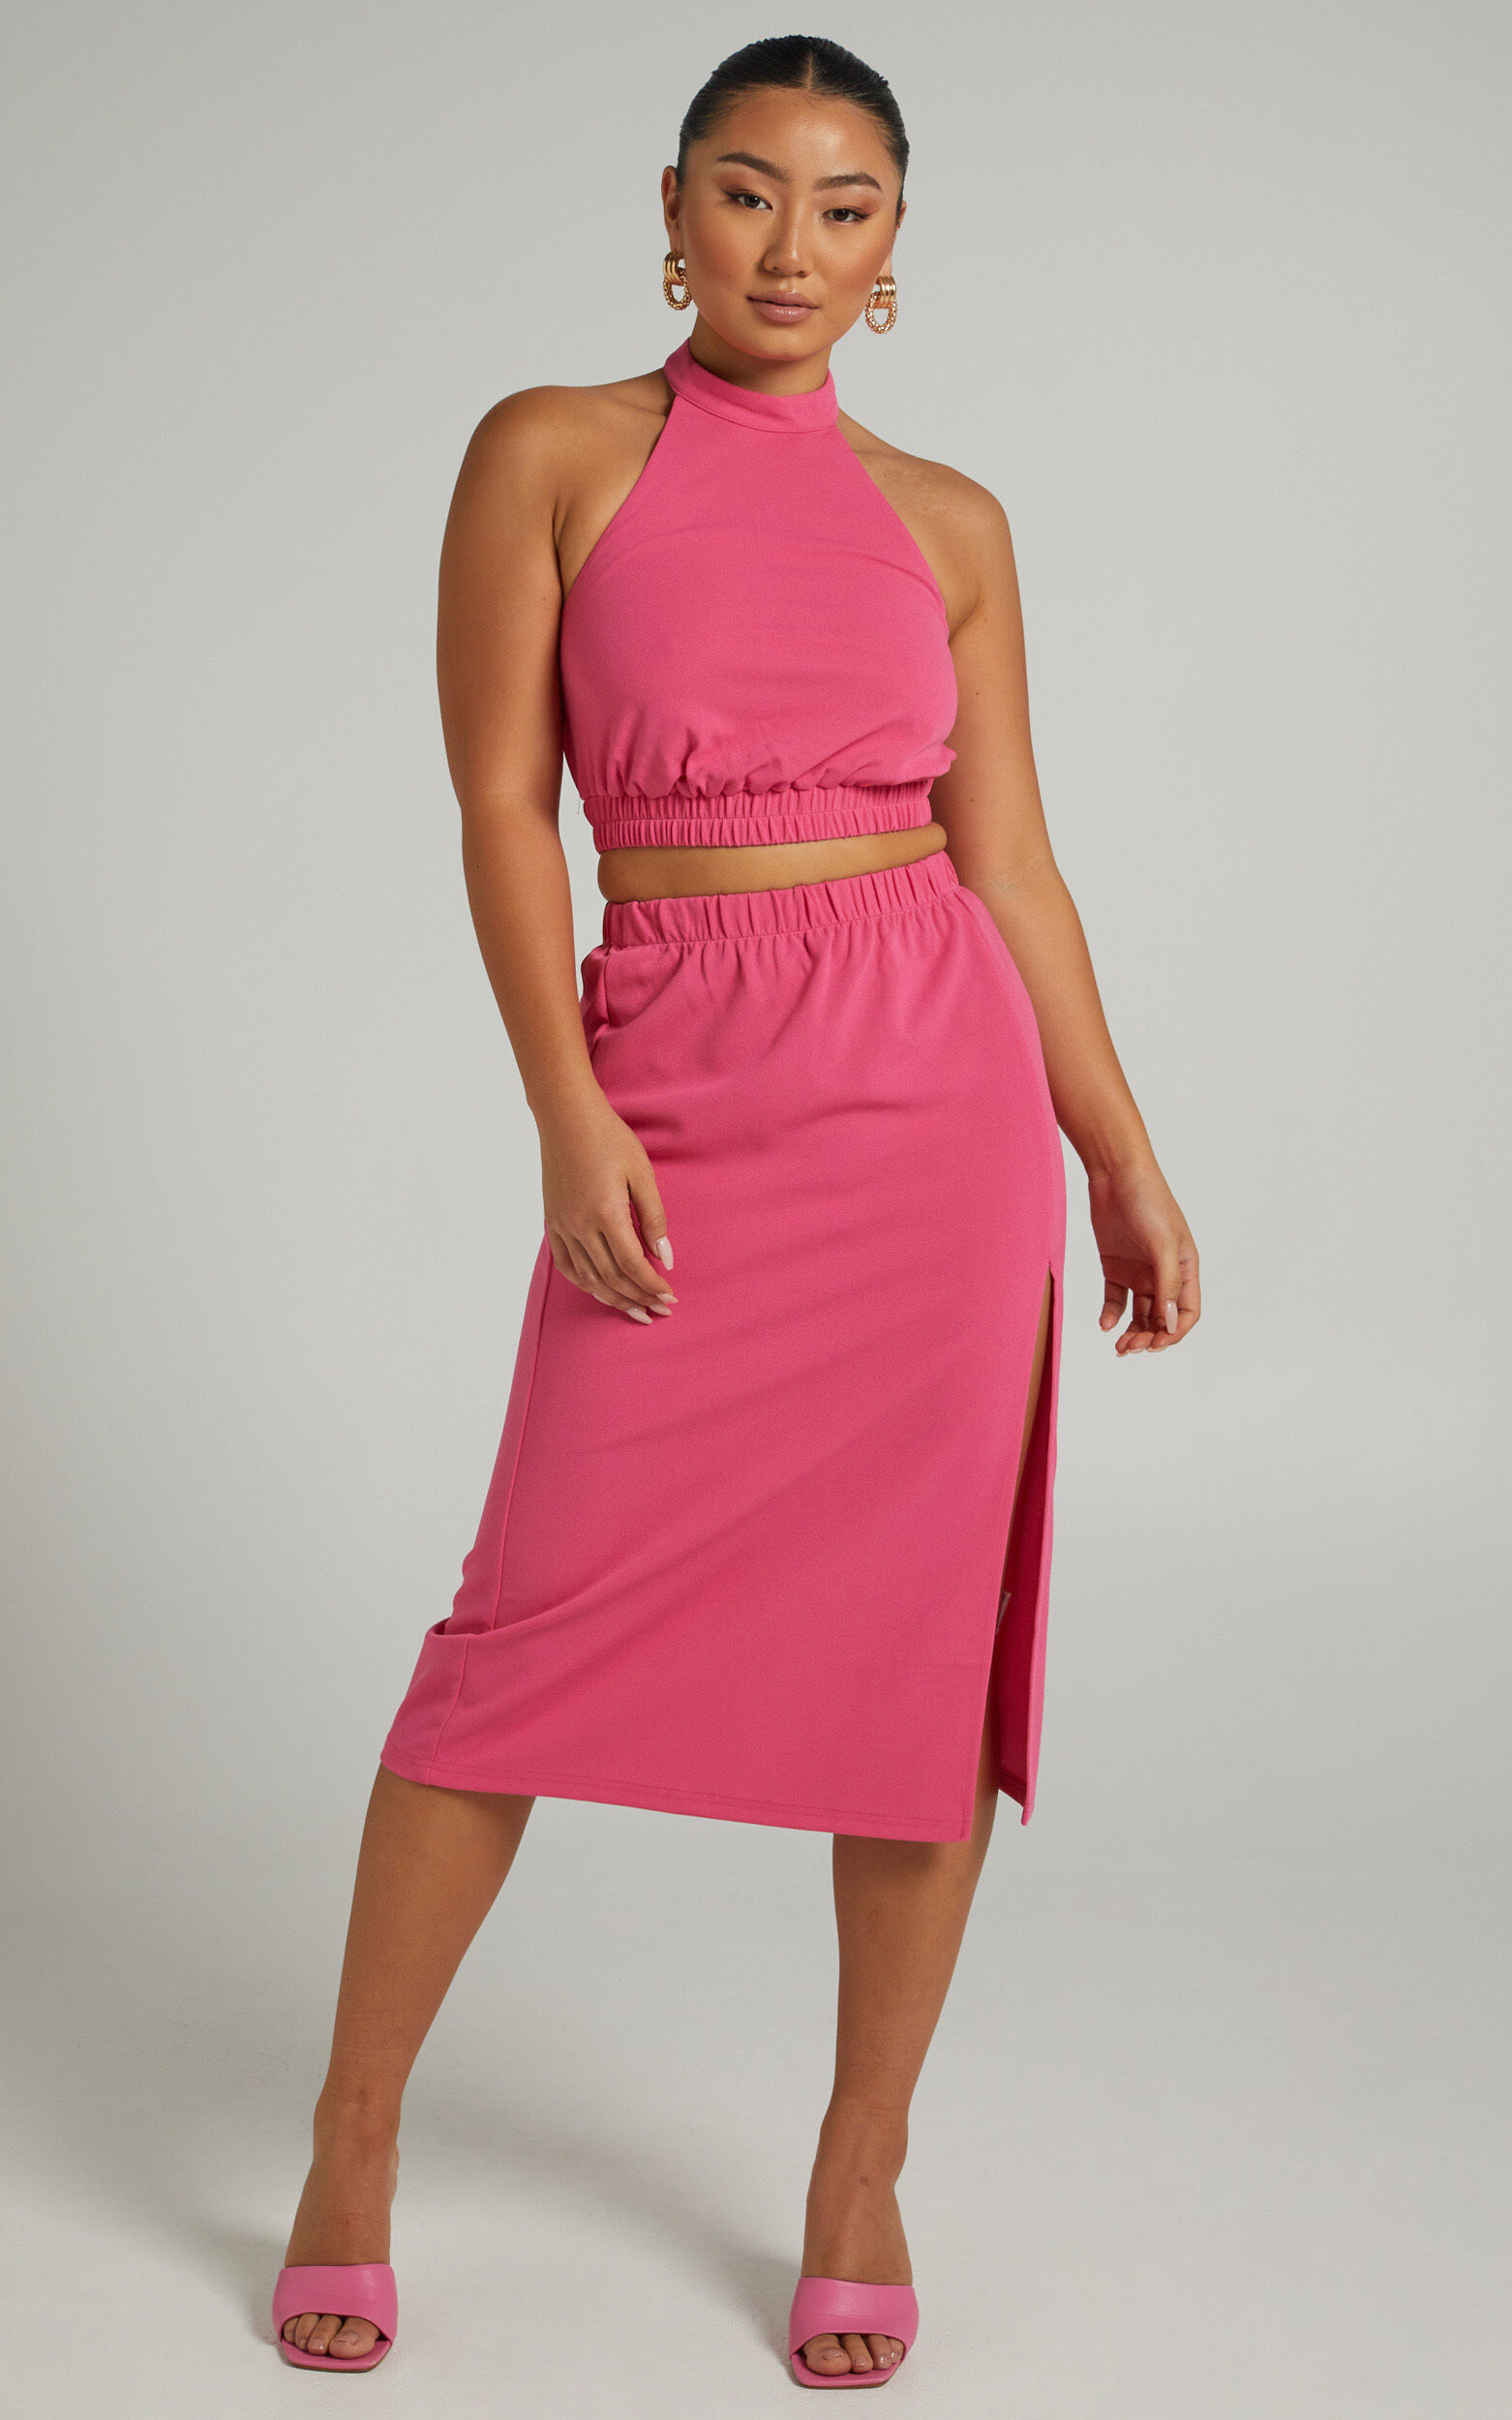 Lerah Elastic Waist Midi Skirt in Hot Pink - 06, PNK1, super-hi-res image number null